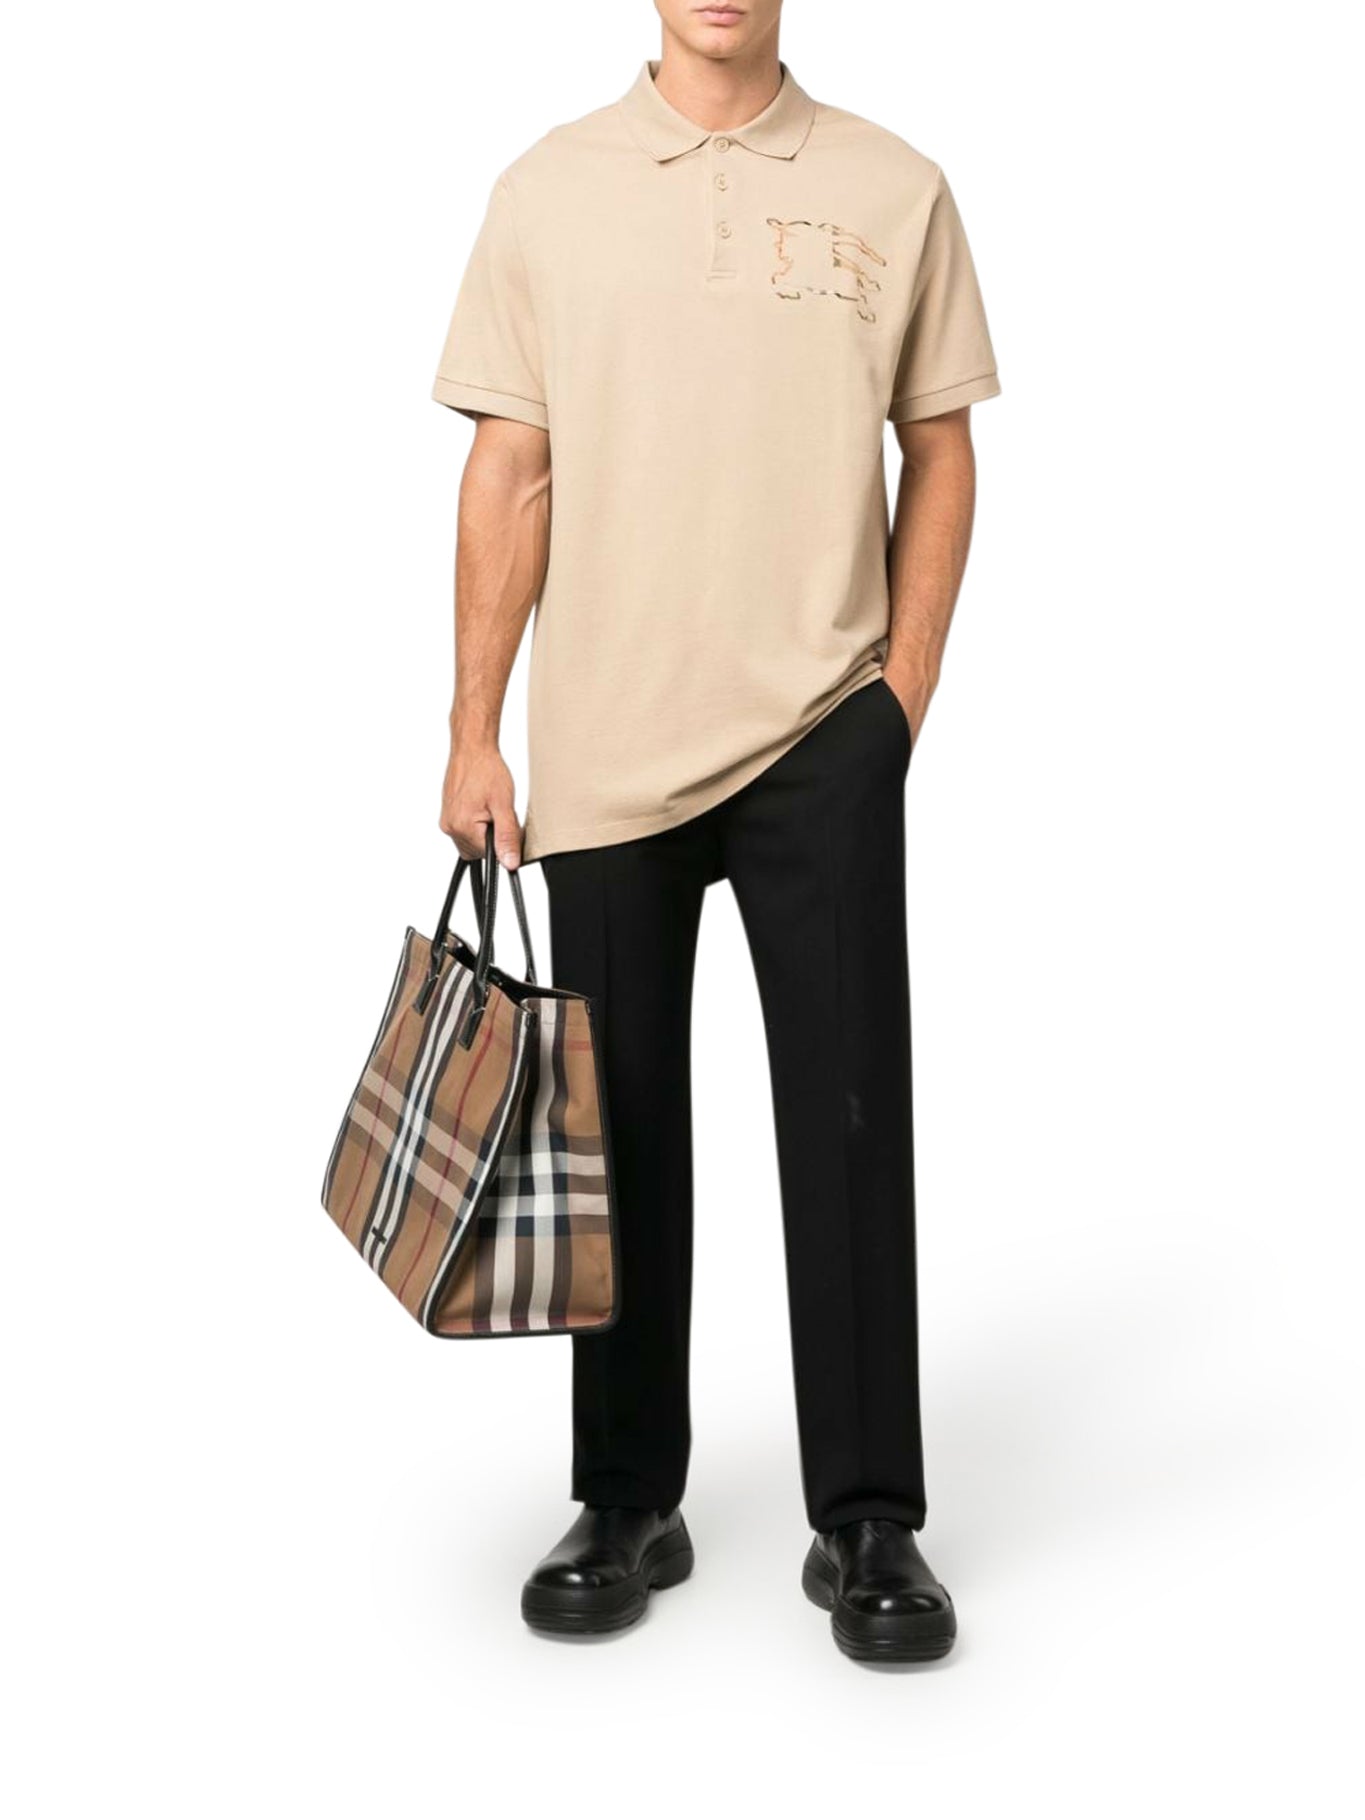 Piqué cotton polo shirt with EKD Check